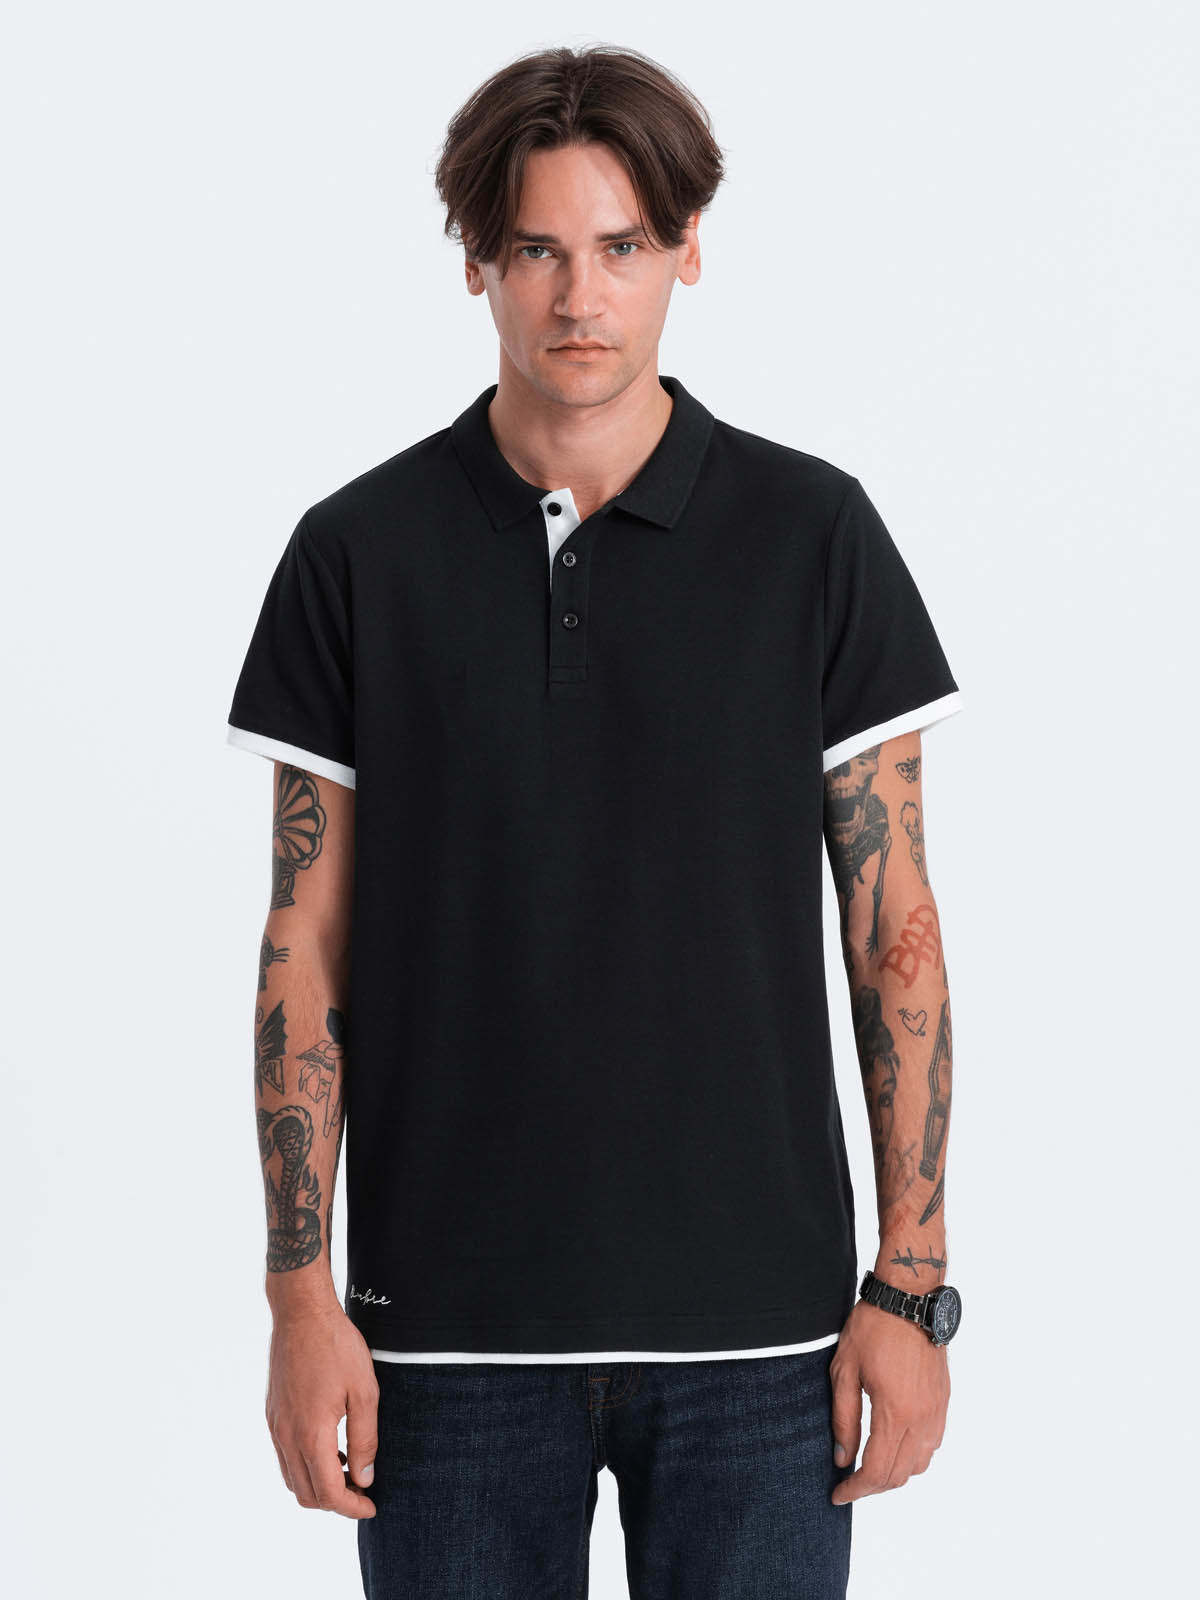 Men's cotton polo shirt - black V8 OM-POSS V8 OM-POSS - 0113